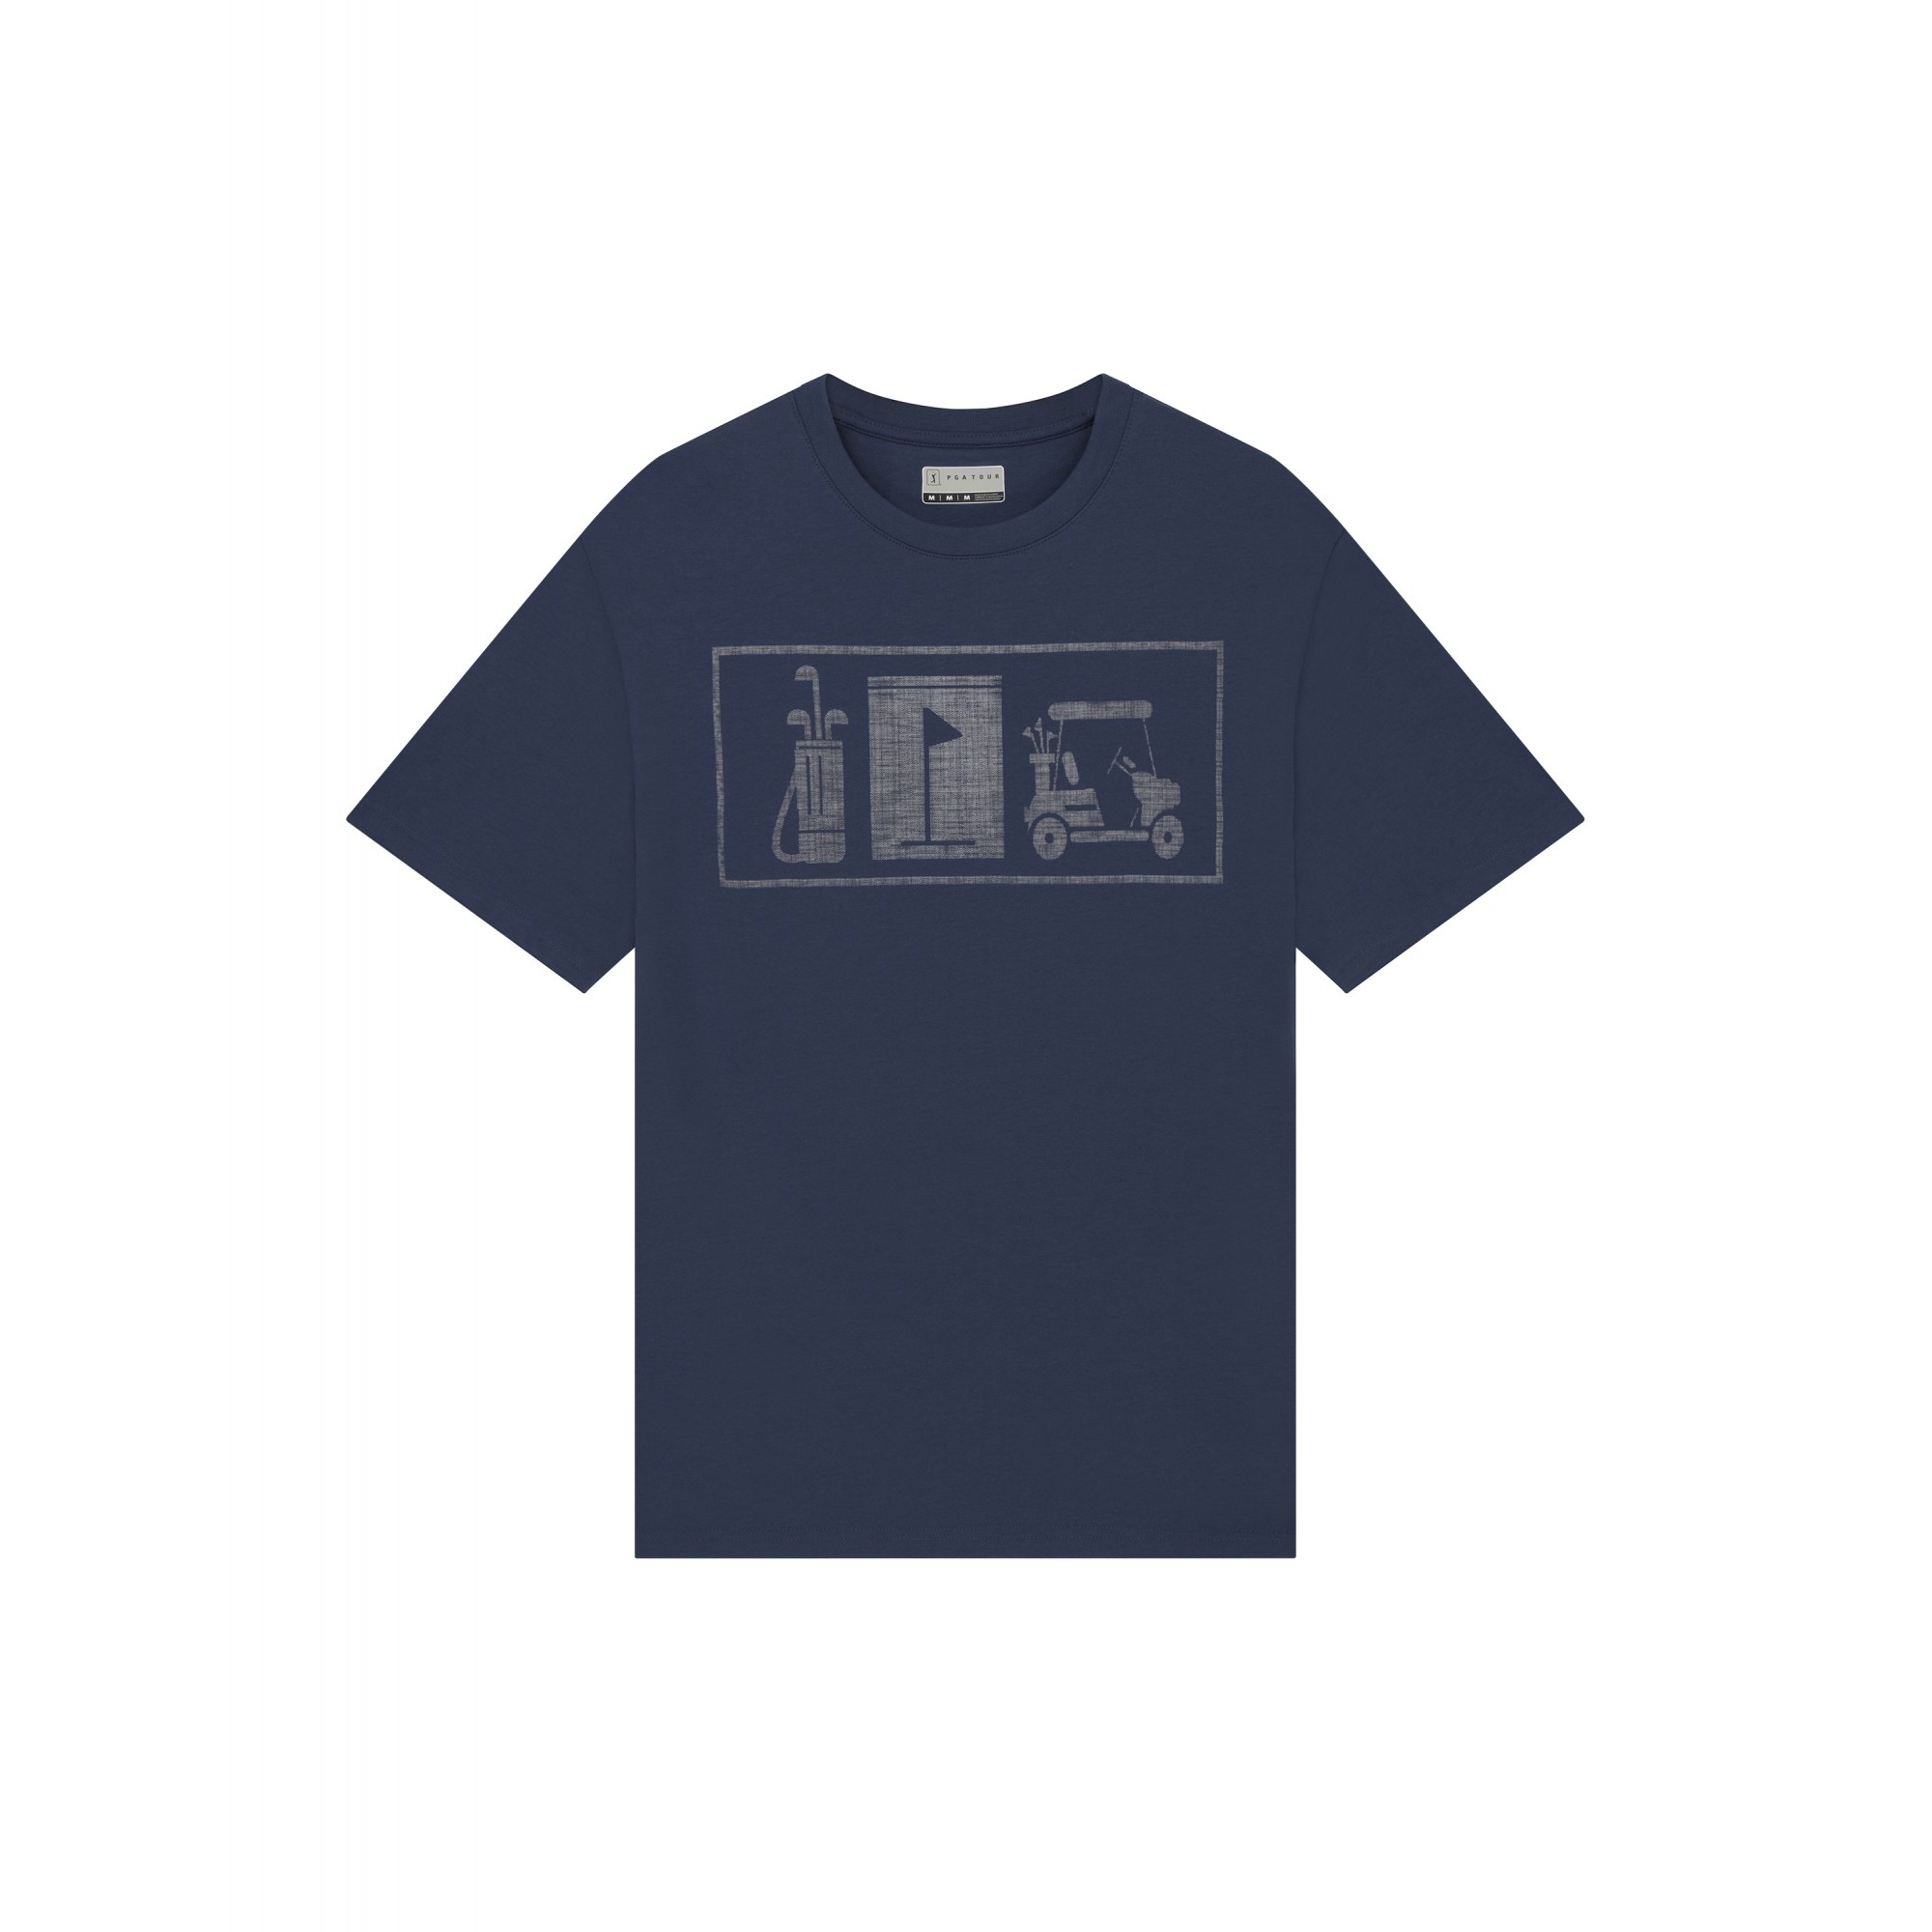 Camiseta Diseño Impreso Pga Tour - azul-marino - 